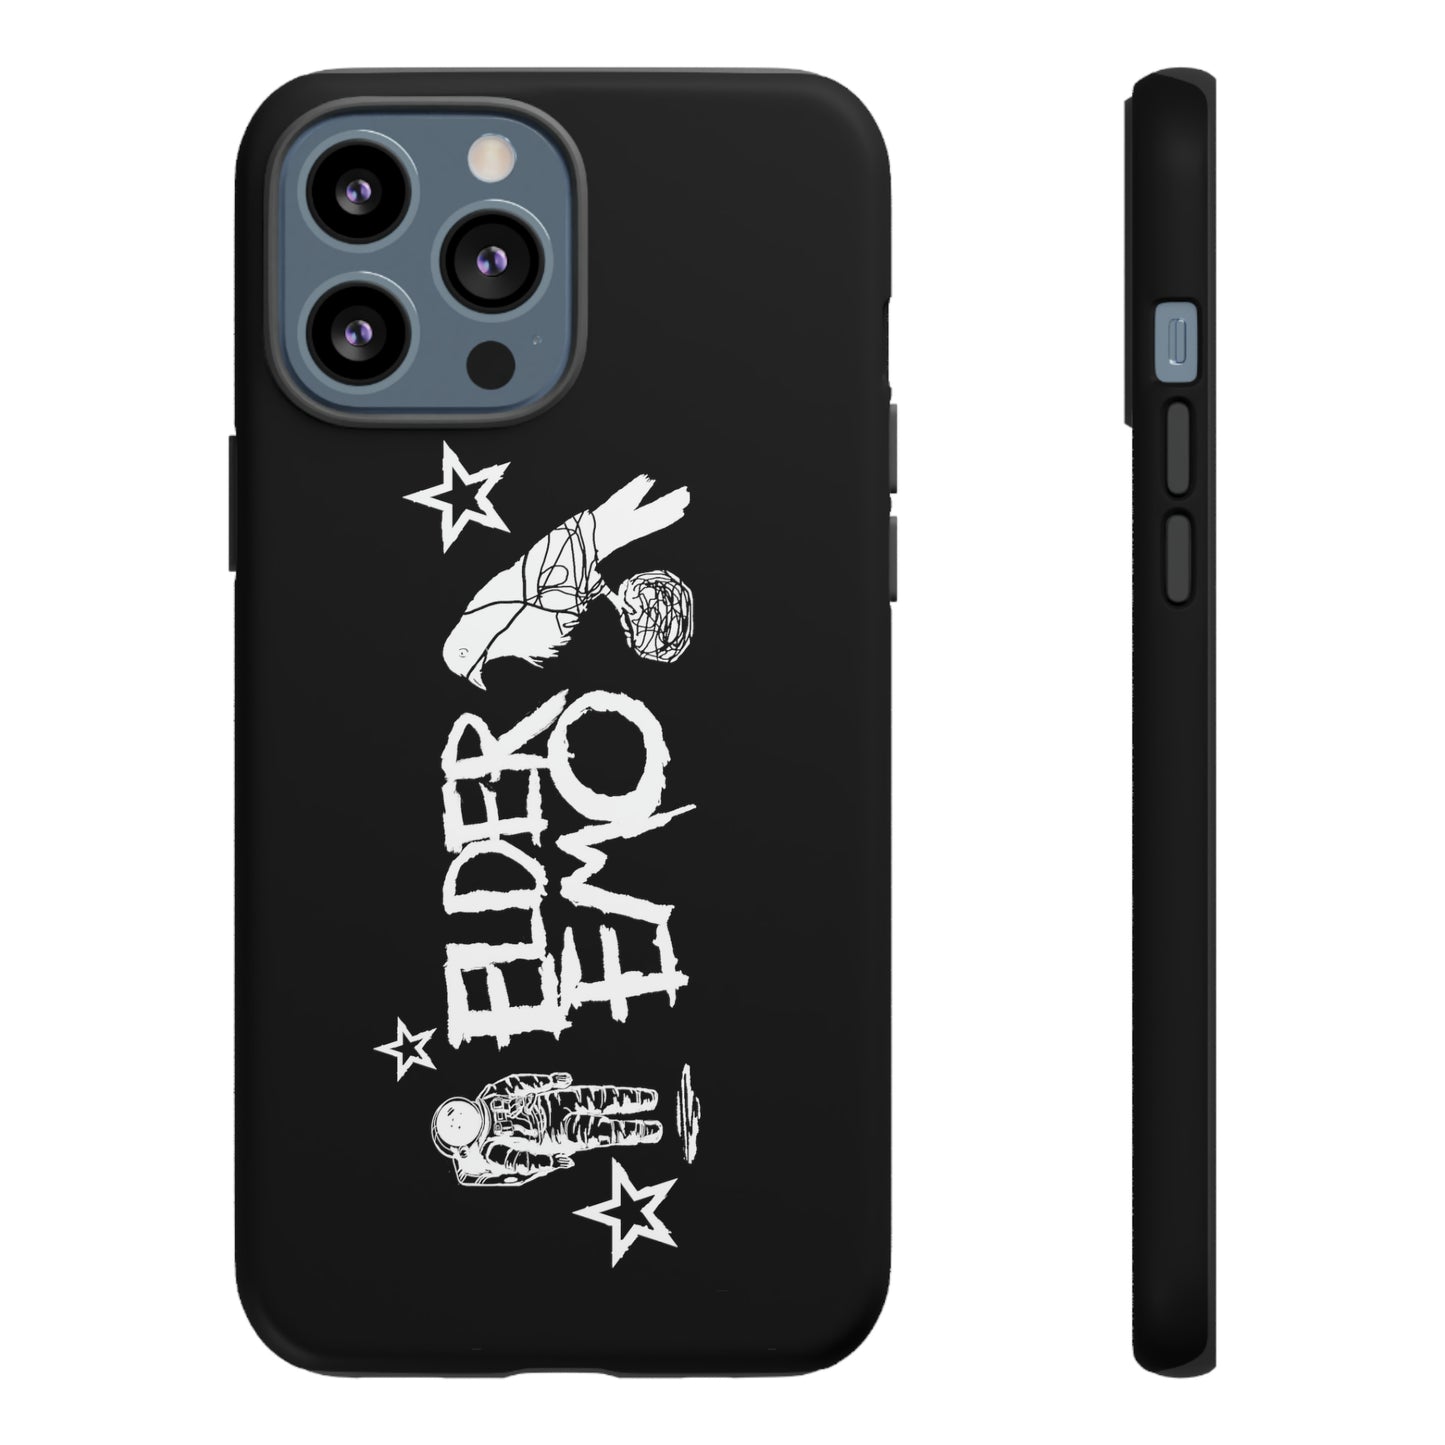 Elder Emo phone cases